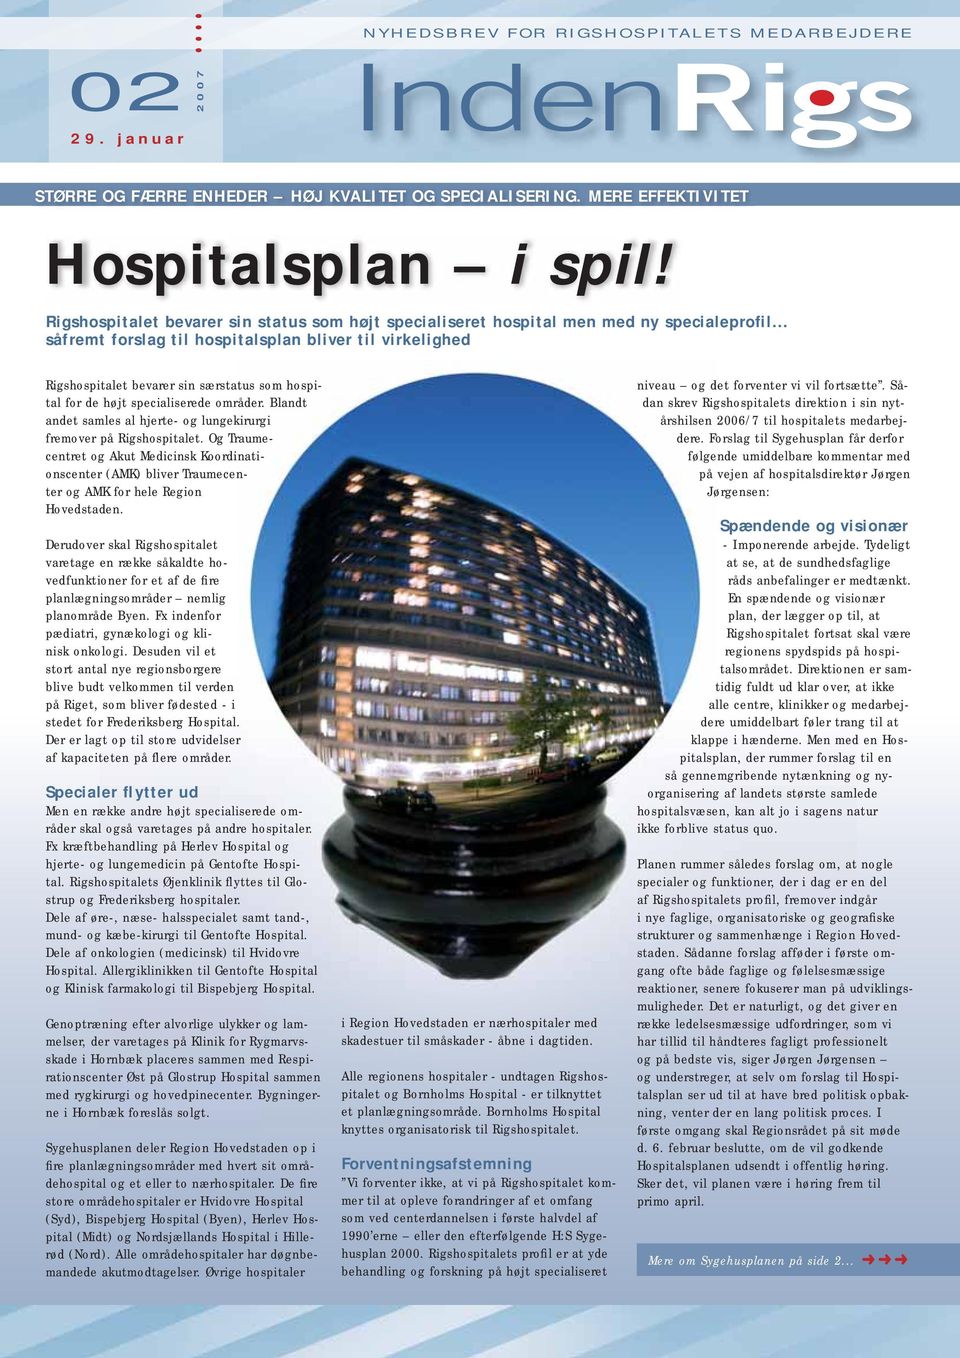 .. såfremt forslag til hospitalsplan bliver til virkelighed Rigshospitalet bevarer sin særstatus som hospital for de højt specialiserede områder.